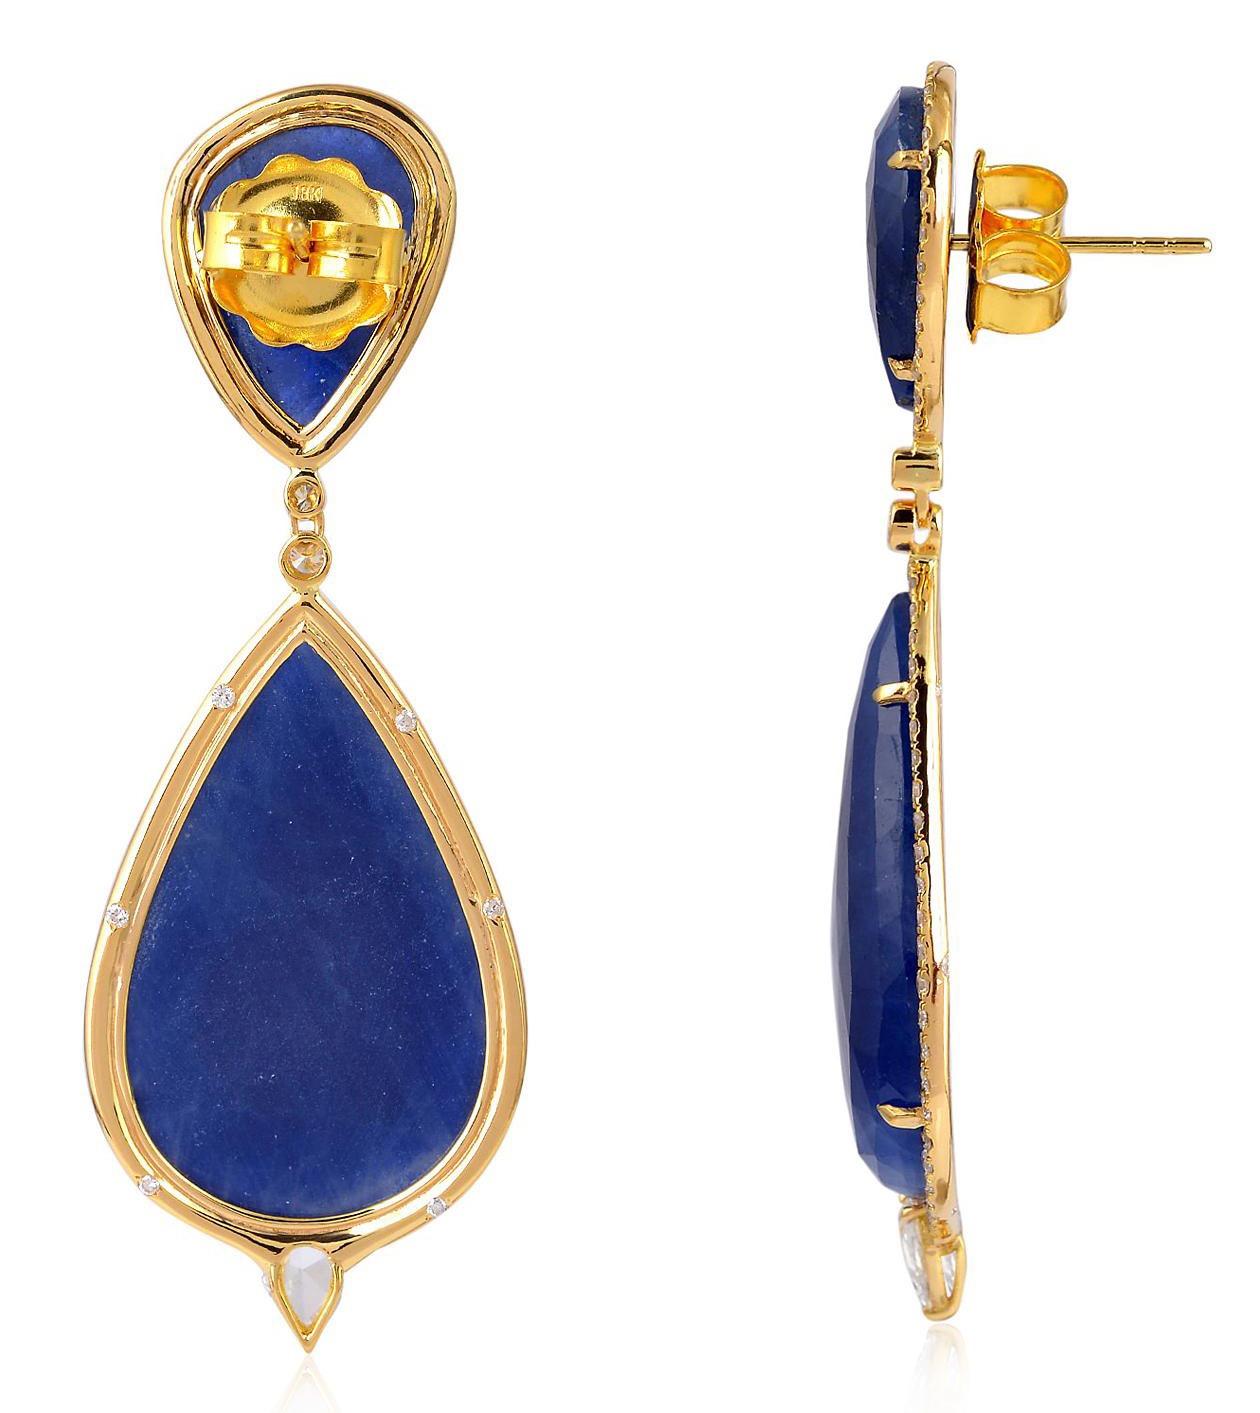 Diese handgefertigten Ohrringe aus 18-karätigem Gold sind mit 55,76 Karat blauem Saphir und 2,05 Karat schimmernden Diamanten besetzt. 

FOLGEN  MEGHNA JEWELS Storefront, um die neueste Kollektion und exklusive Stücke zu sehen.  Meghna Jewels ist